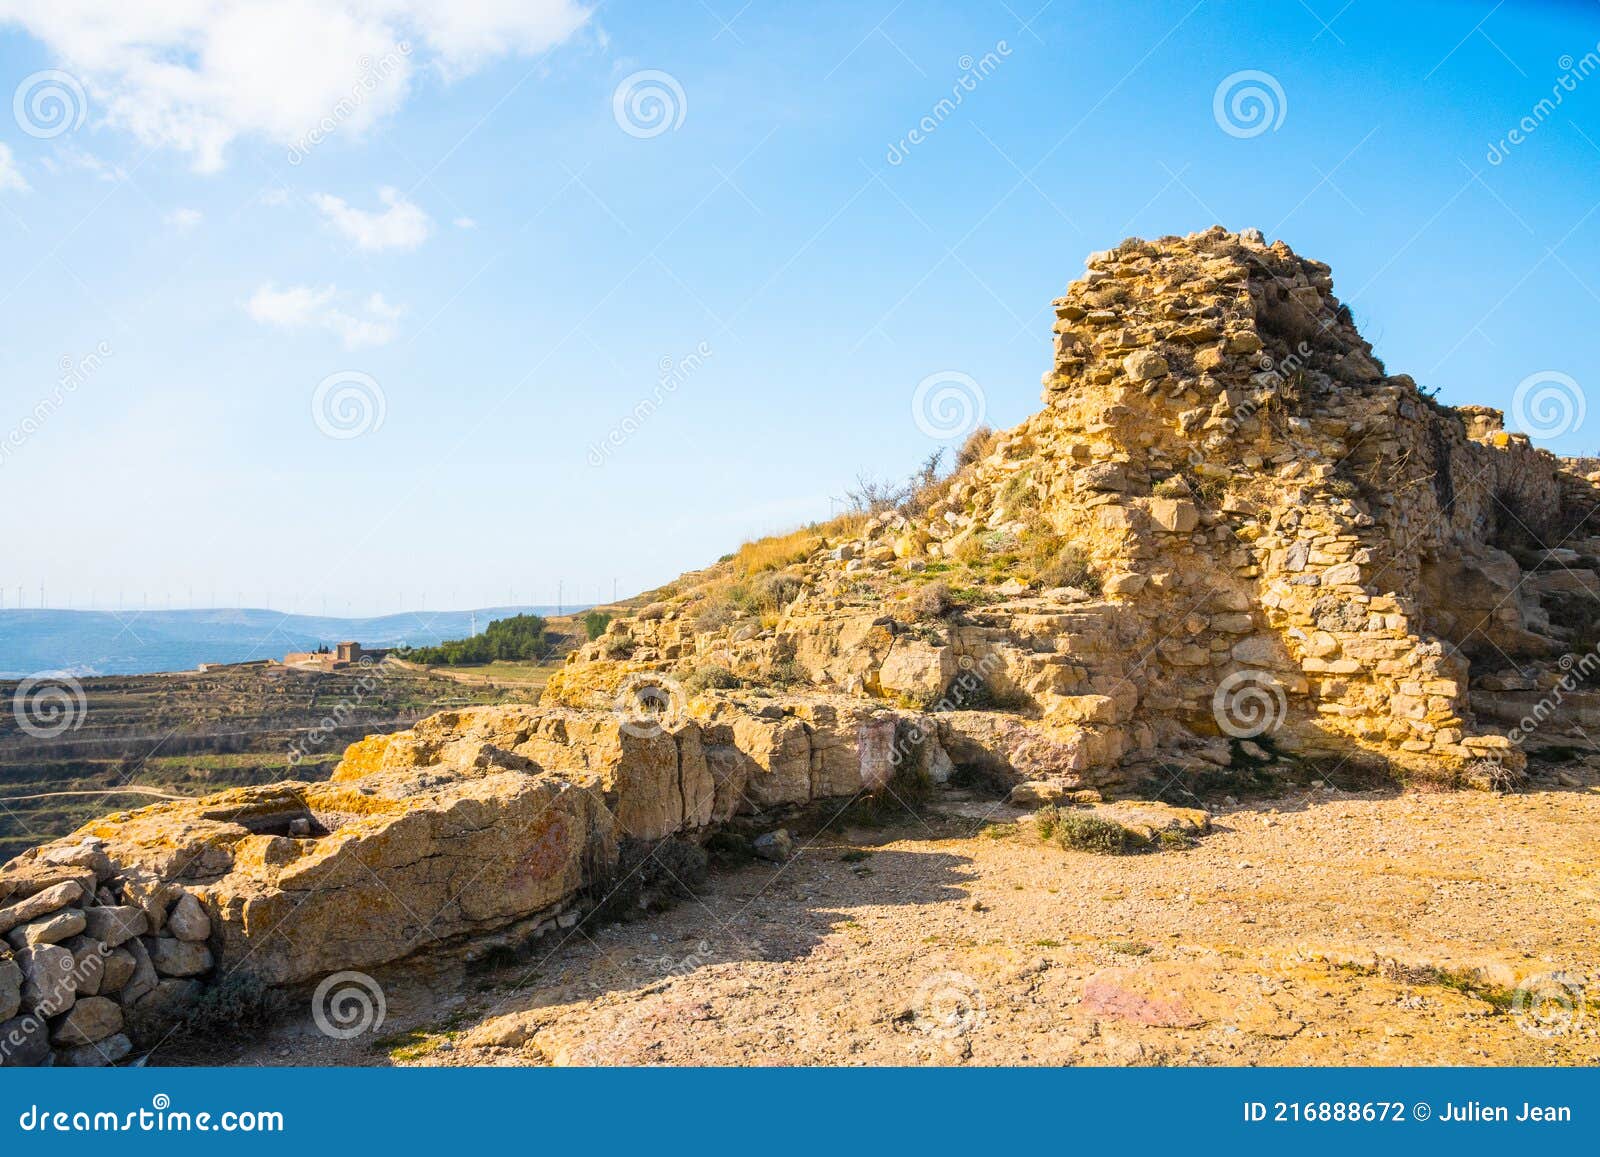 ares del maestre castle ruins, castellon, spain